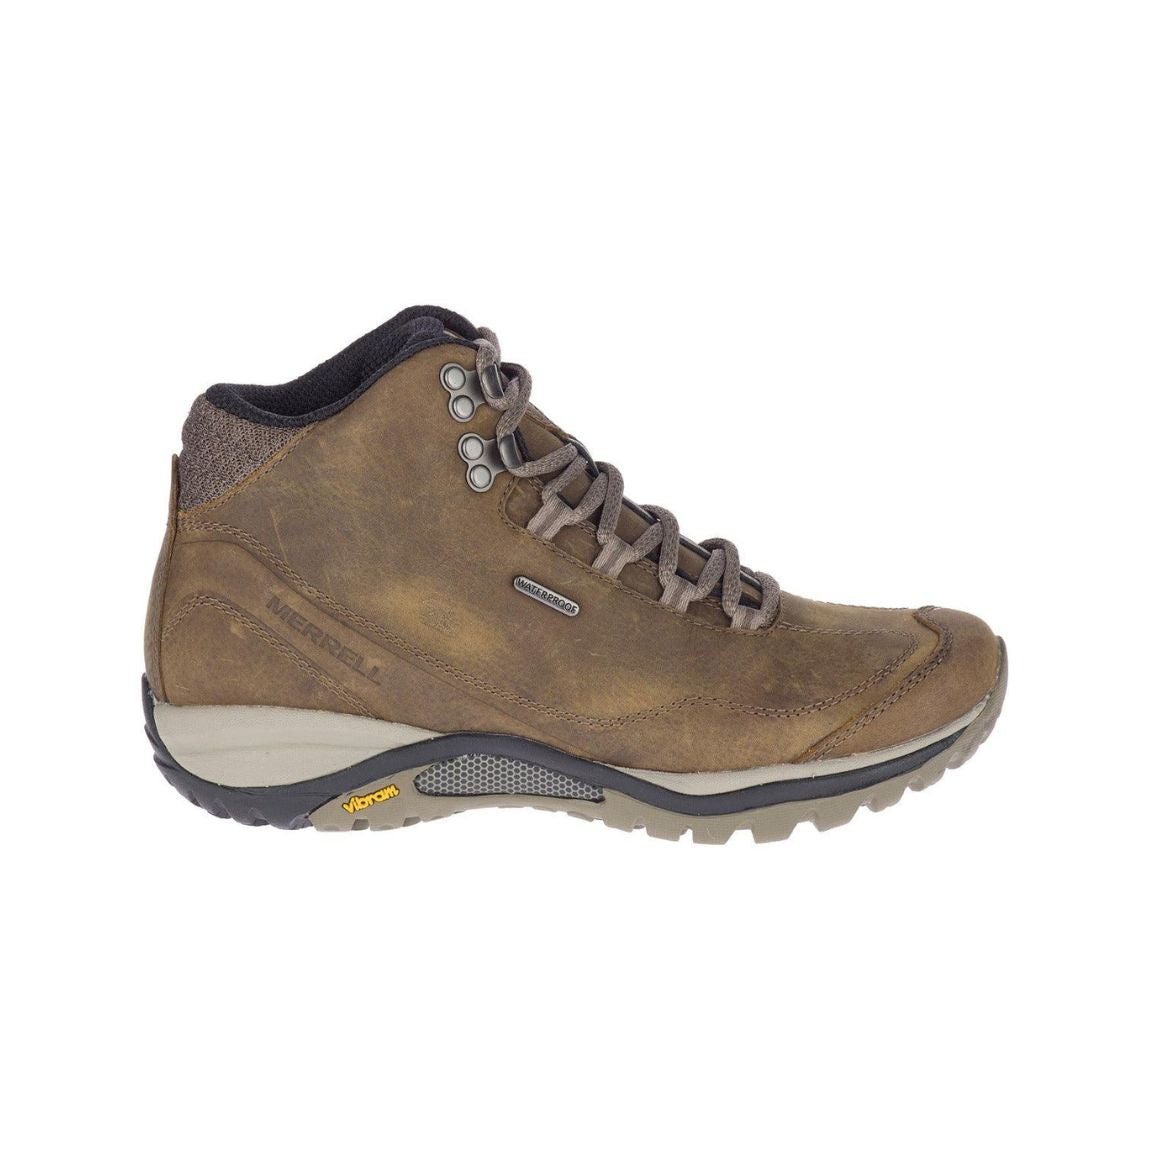 Siren Traveller 3 Mid Waterproof  Hiking Shoes (Wide Width) - Women